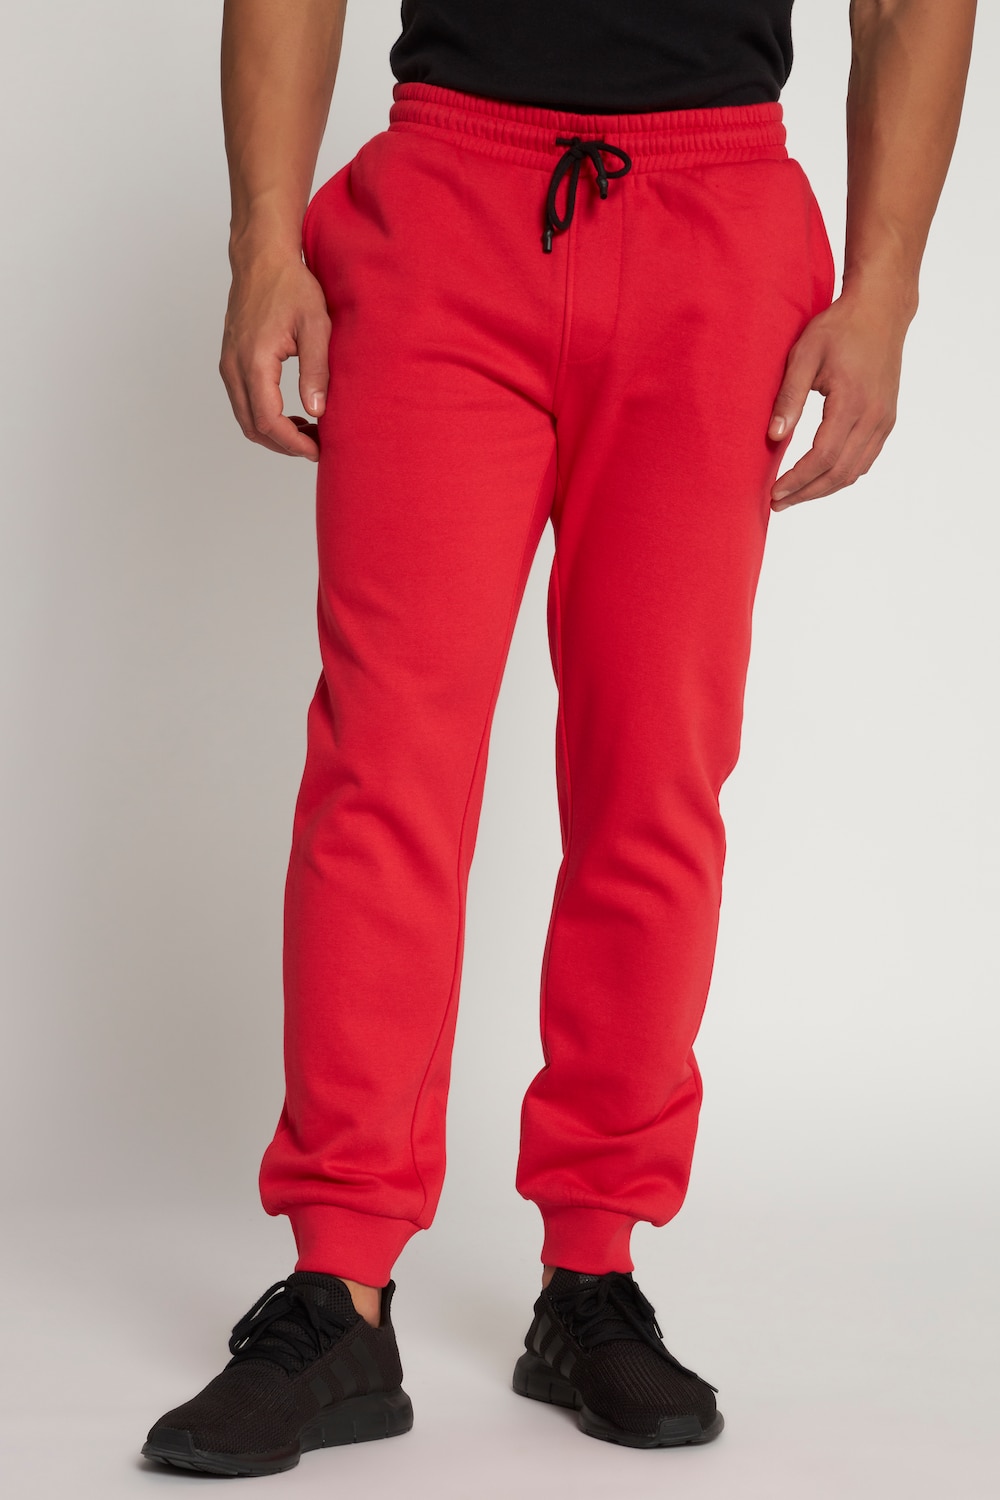 Große Größen Sweat-Hose, Herren, rot, Größe: 4XL, Baumwolle/Polyester, JP1880